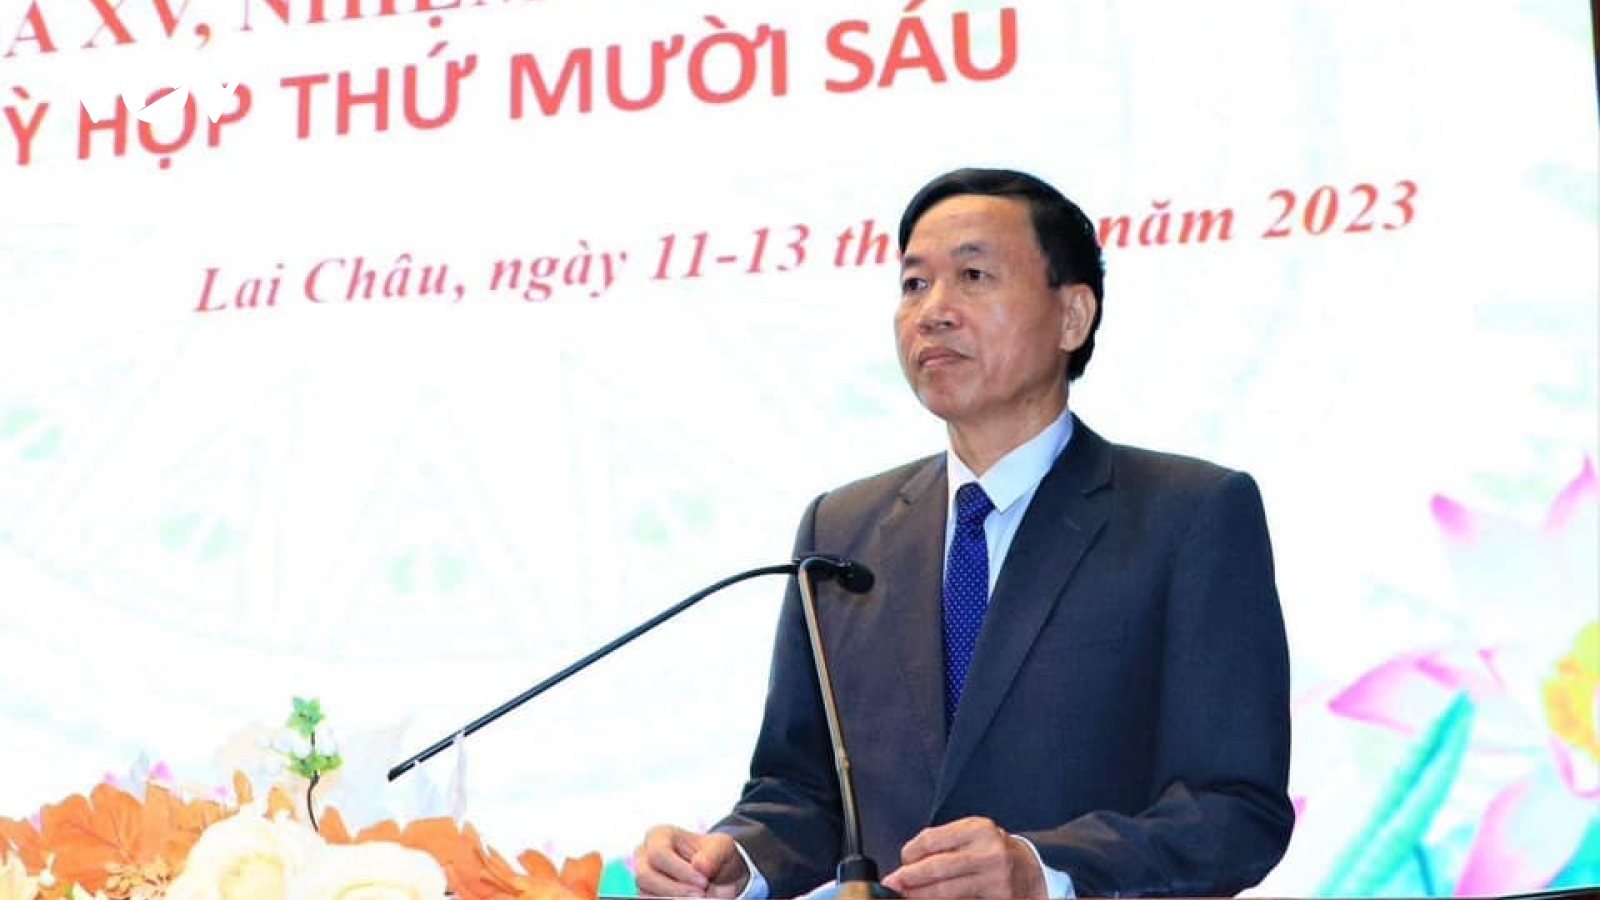 Ông Lê Văn Lương được bầu làm Chủ tịch UBND tỉnh Lai Châu